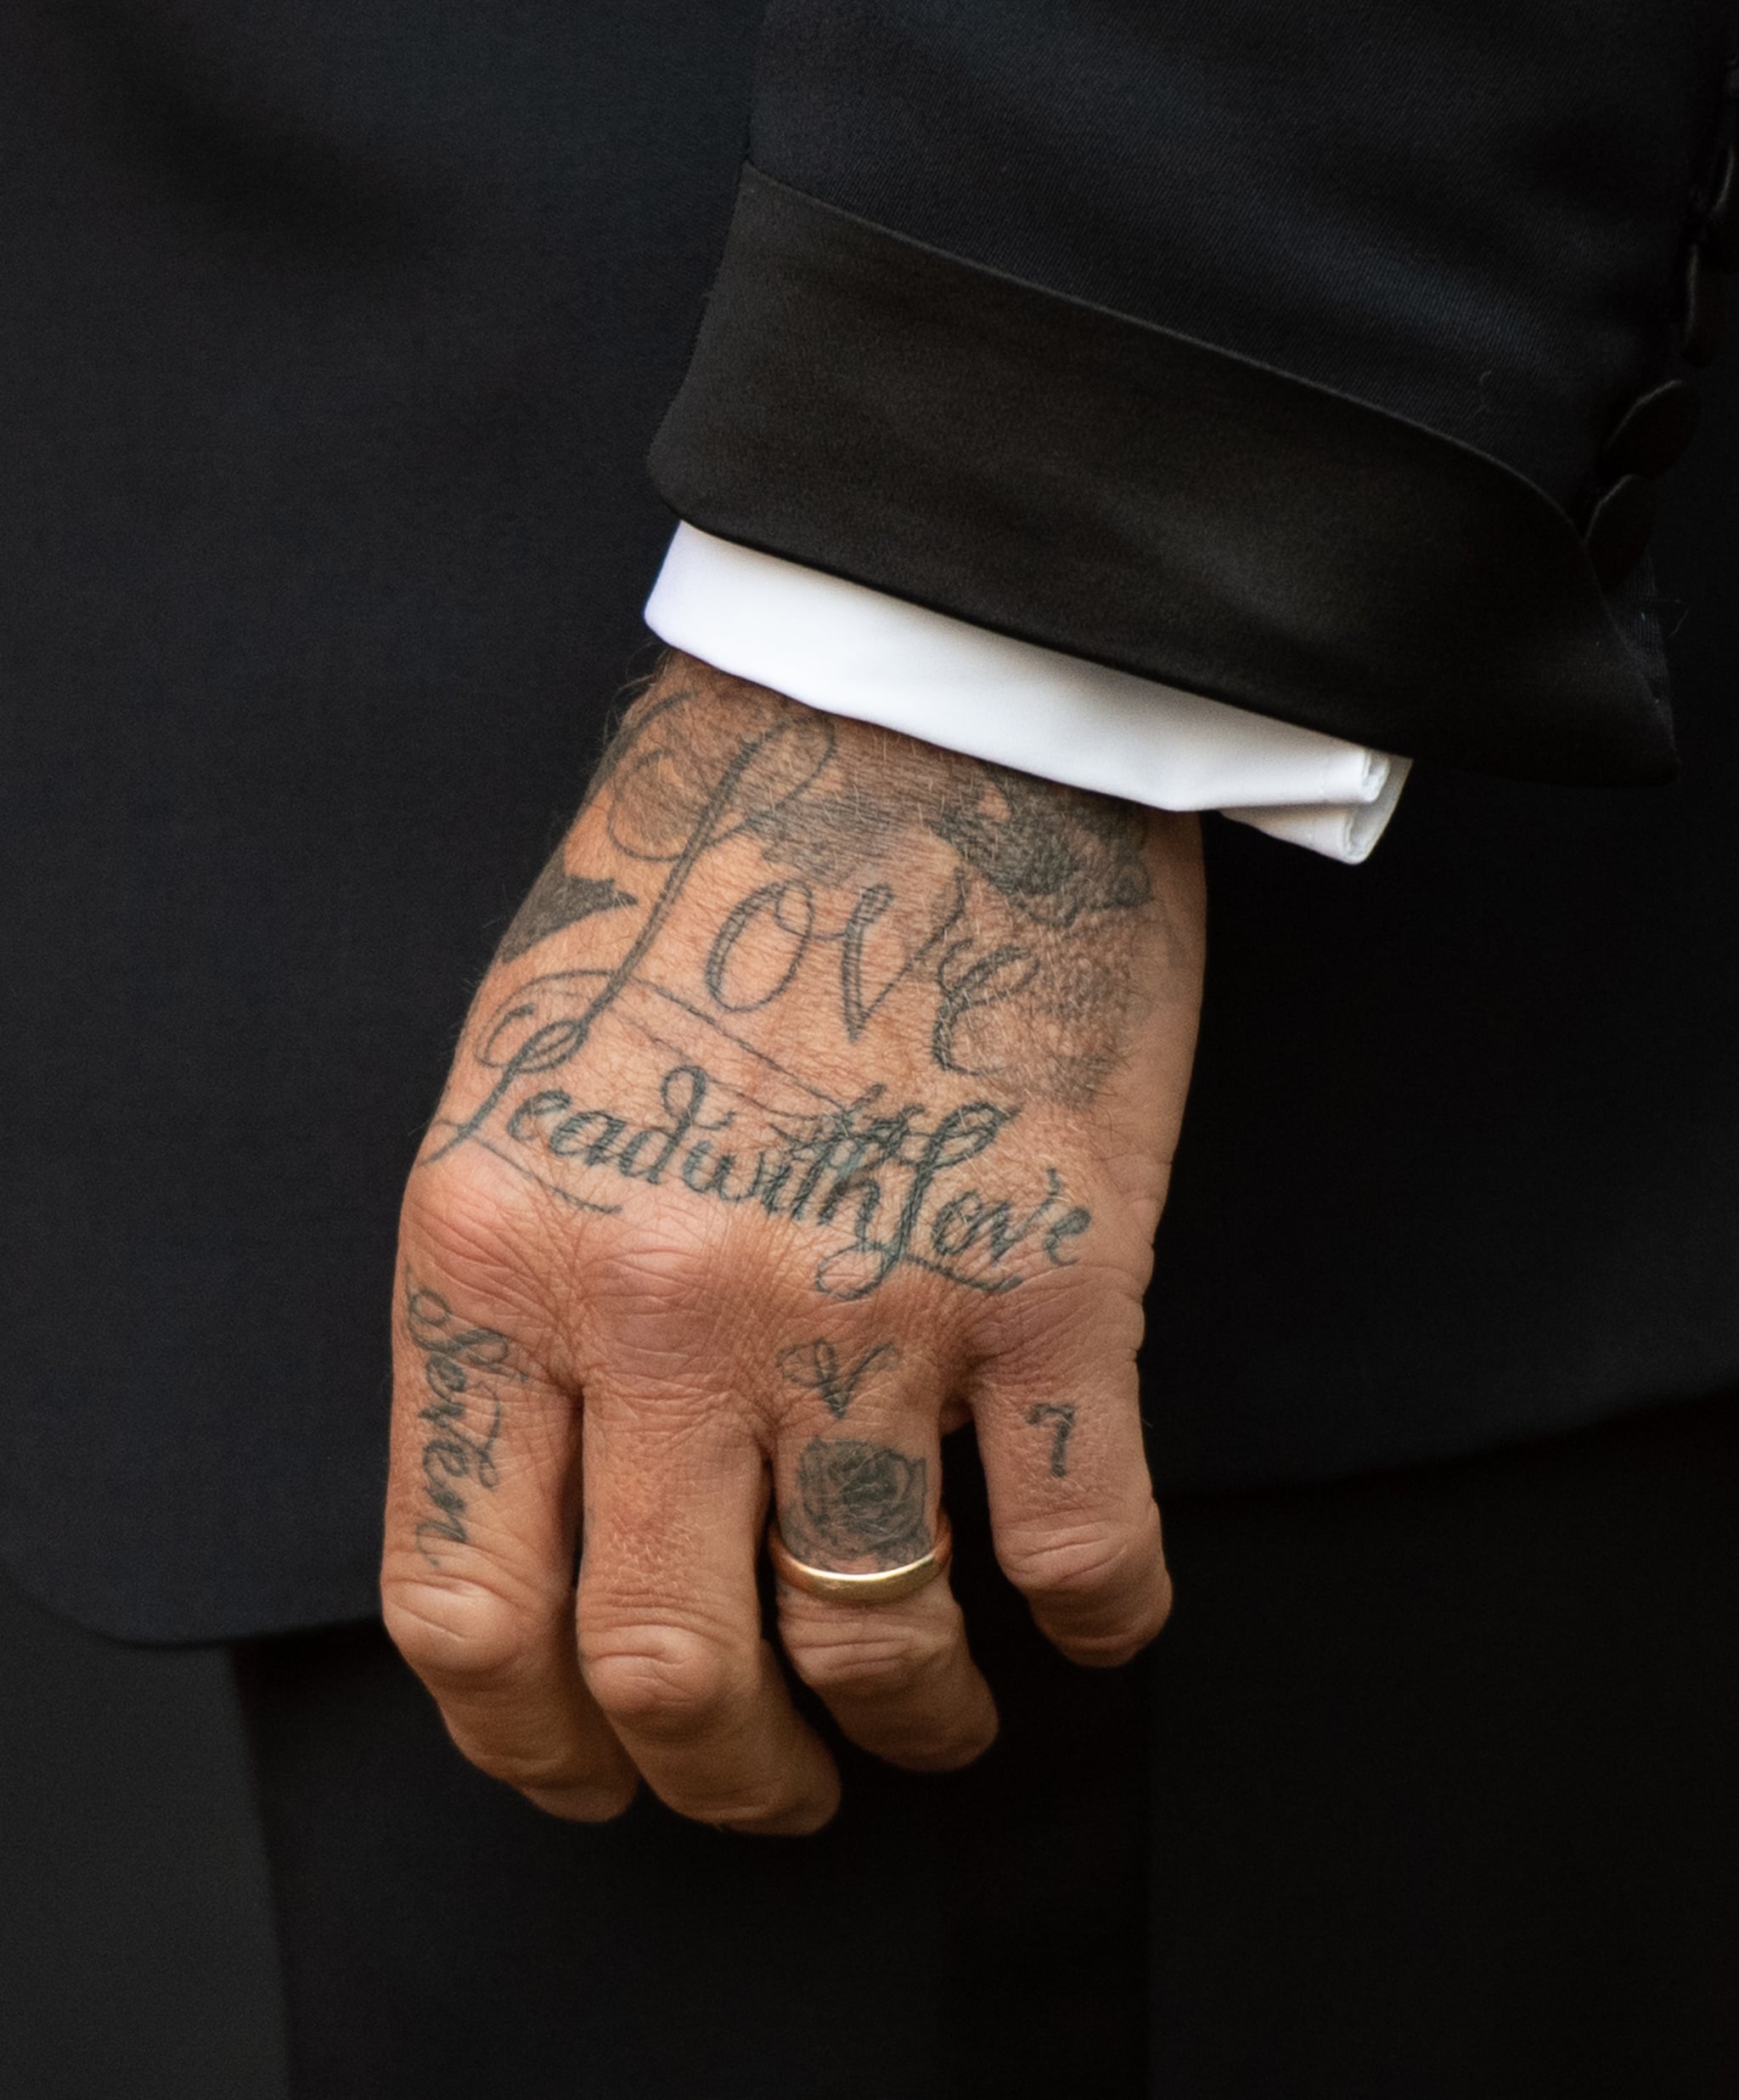 David Beckhams Tattoos  Pictures  POPSUGAR Celebrity